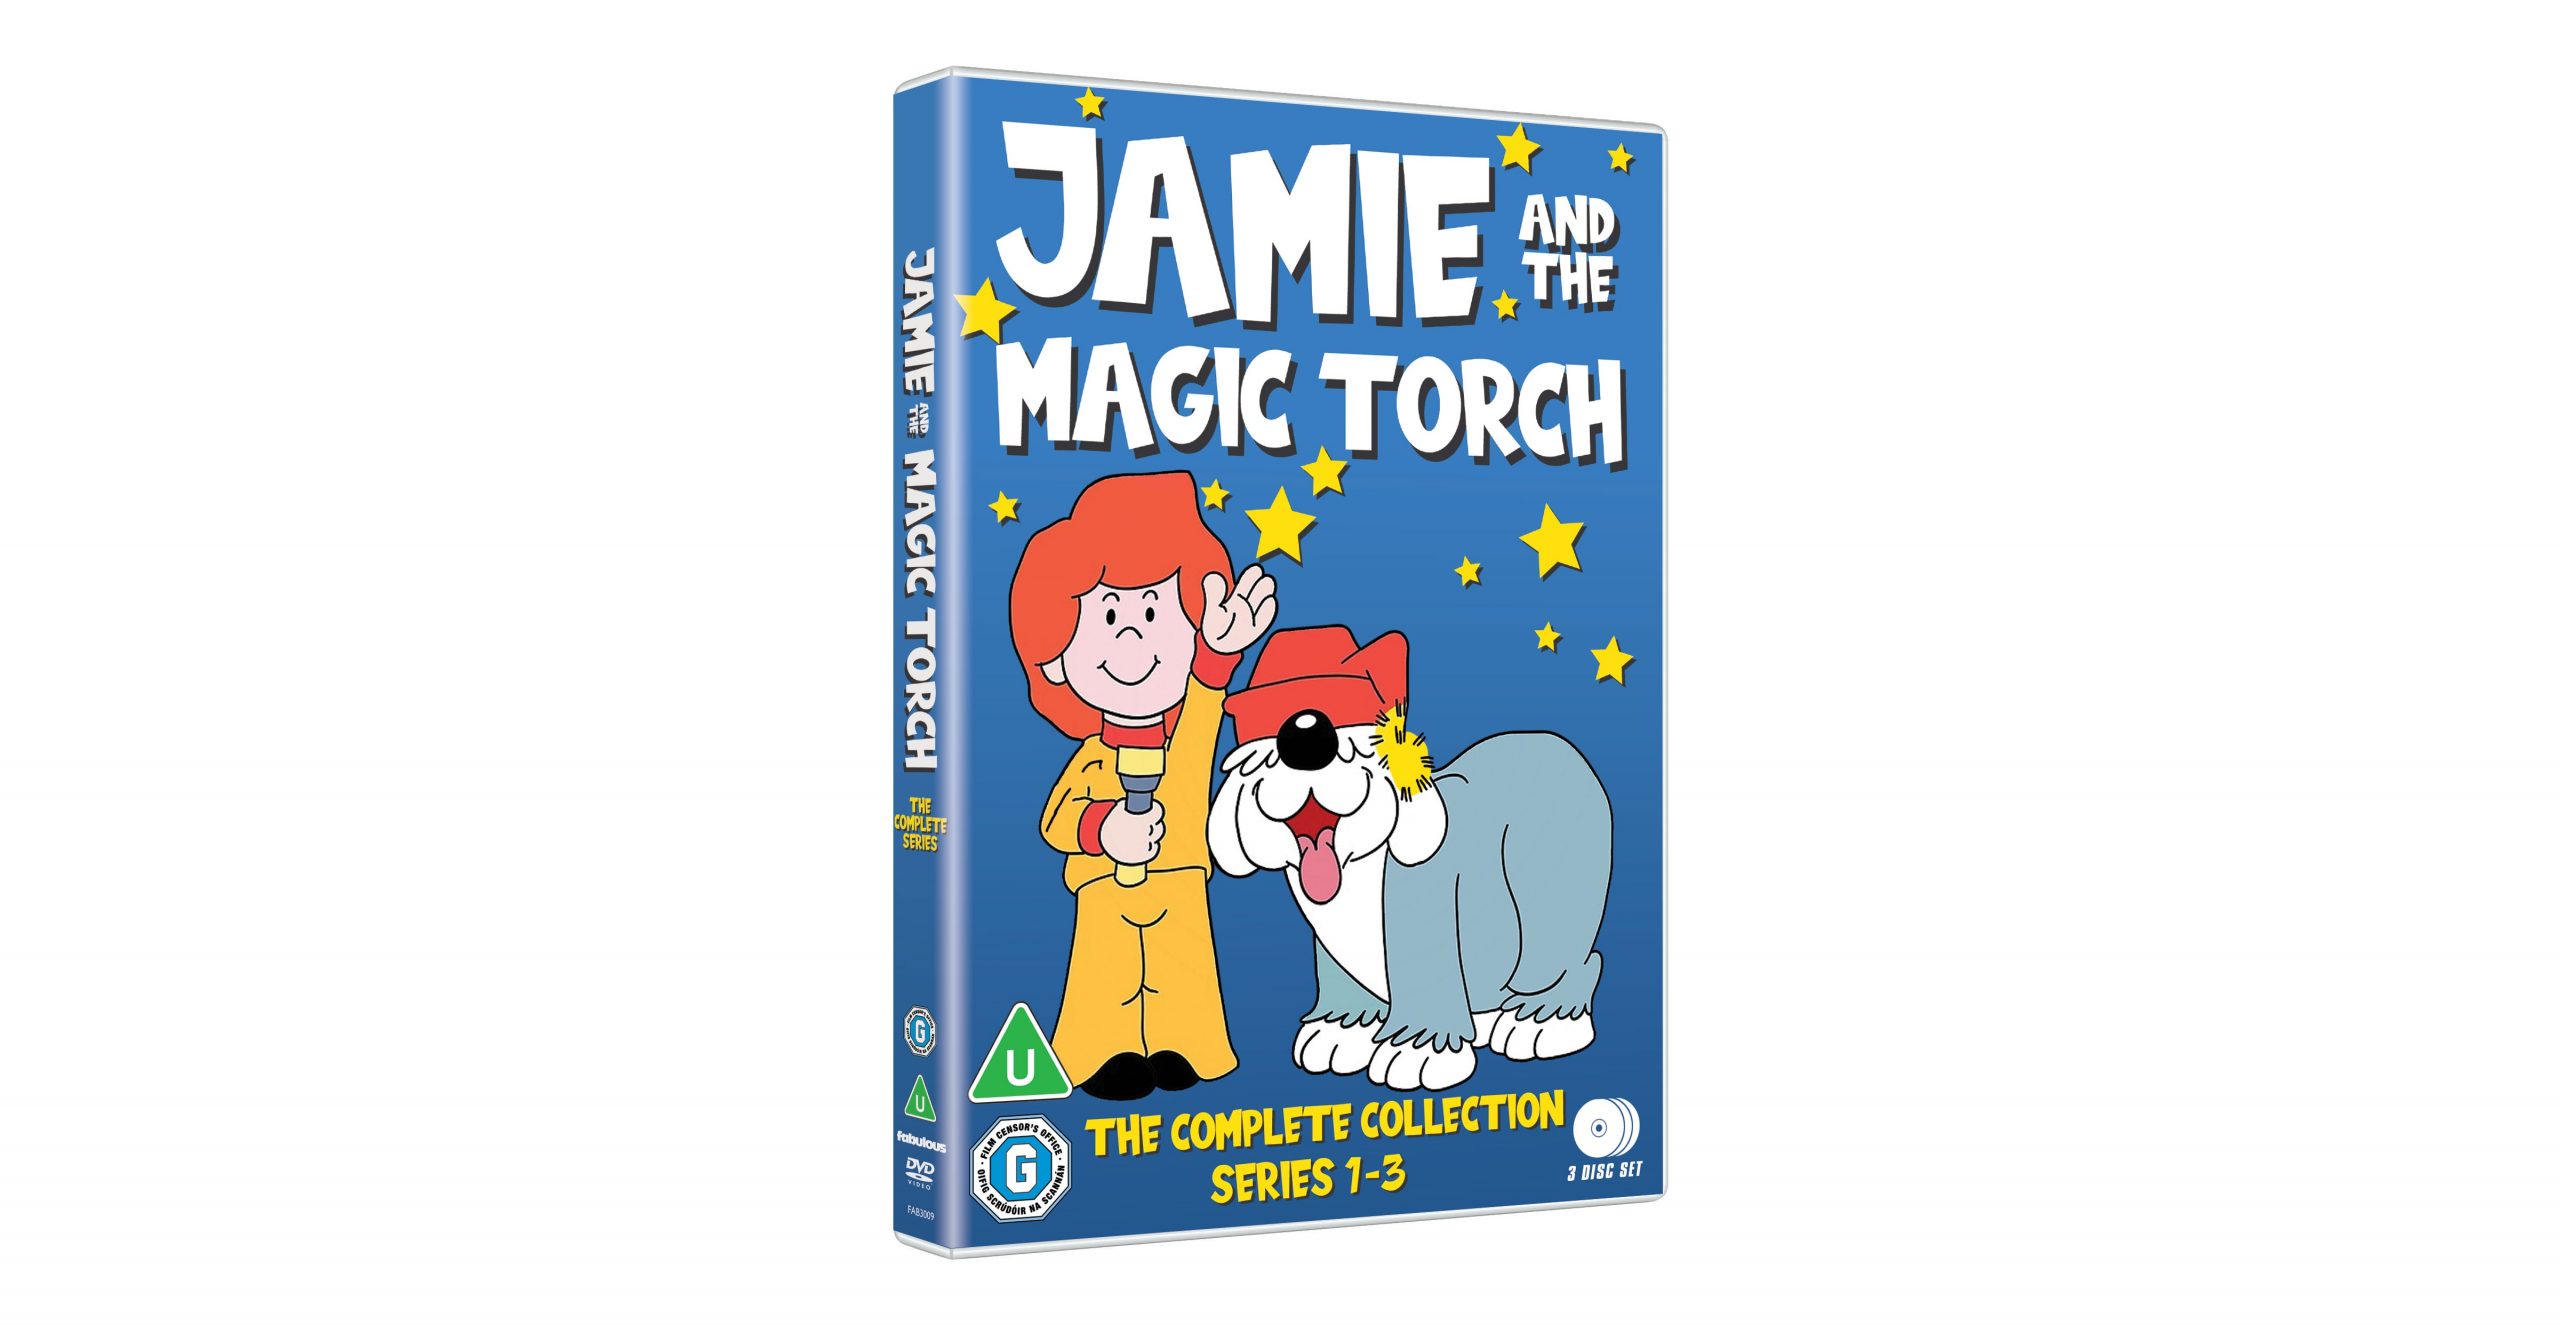 JAMIE MAGIC TORCH